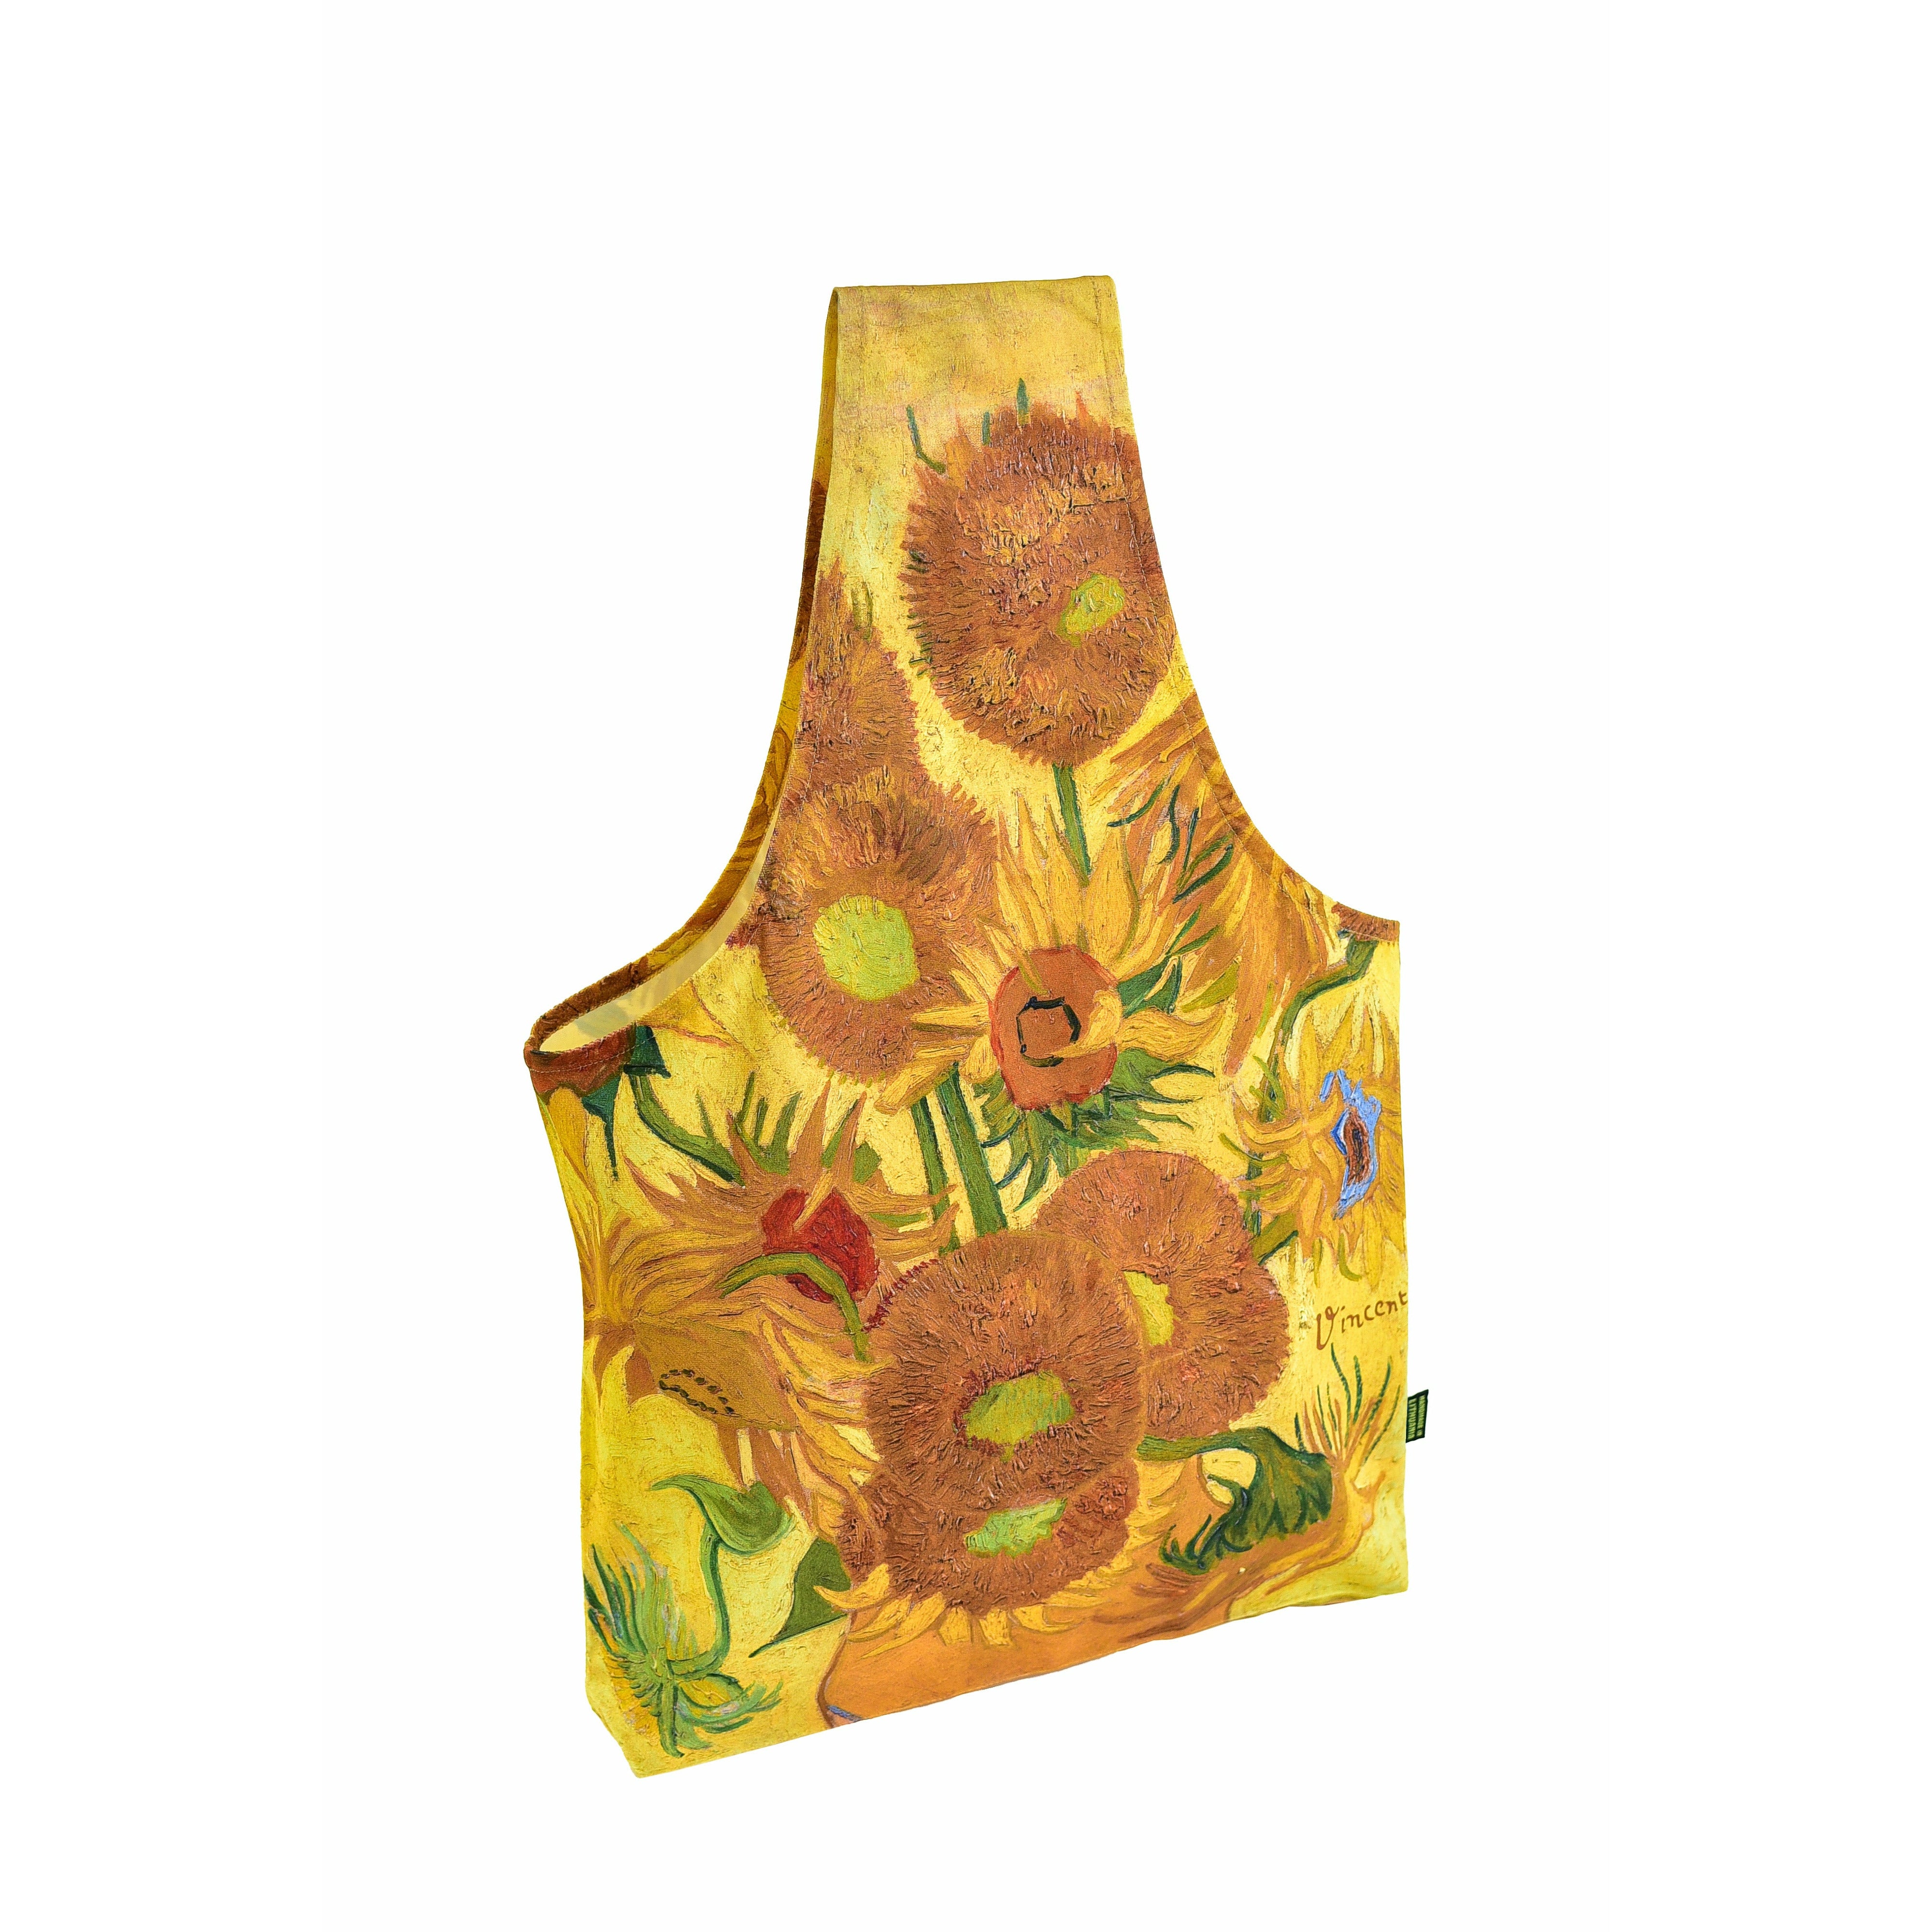 Gegužinis krepšys Vincent Van Gogh "Sunflowers"